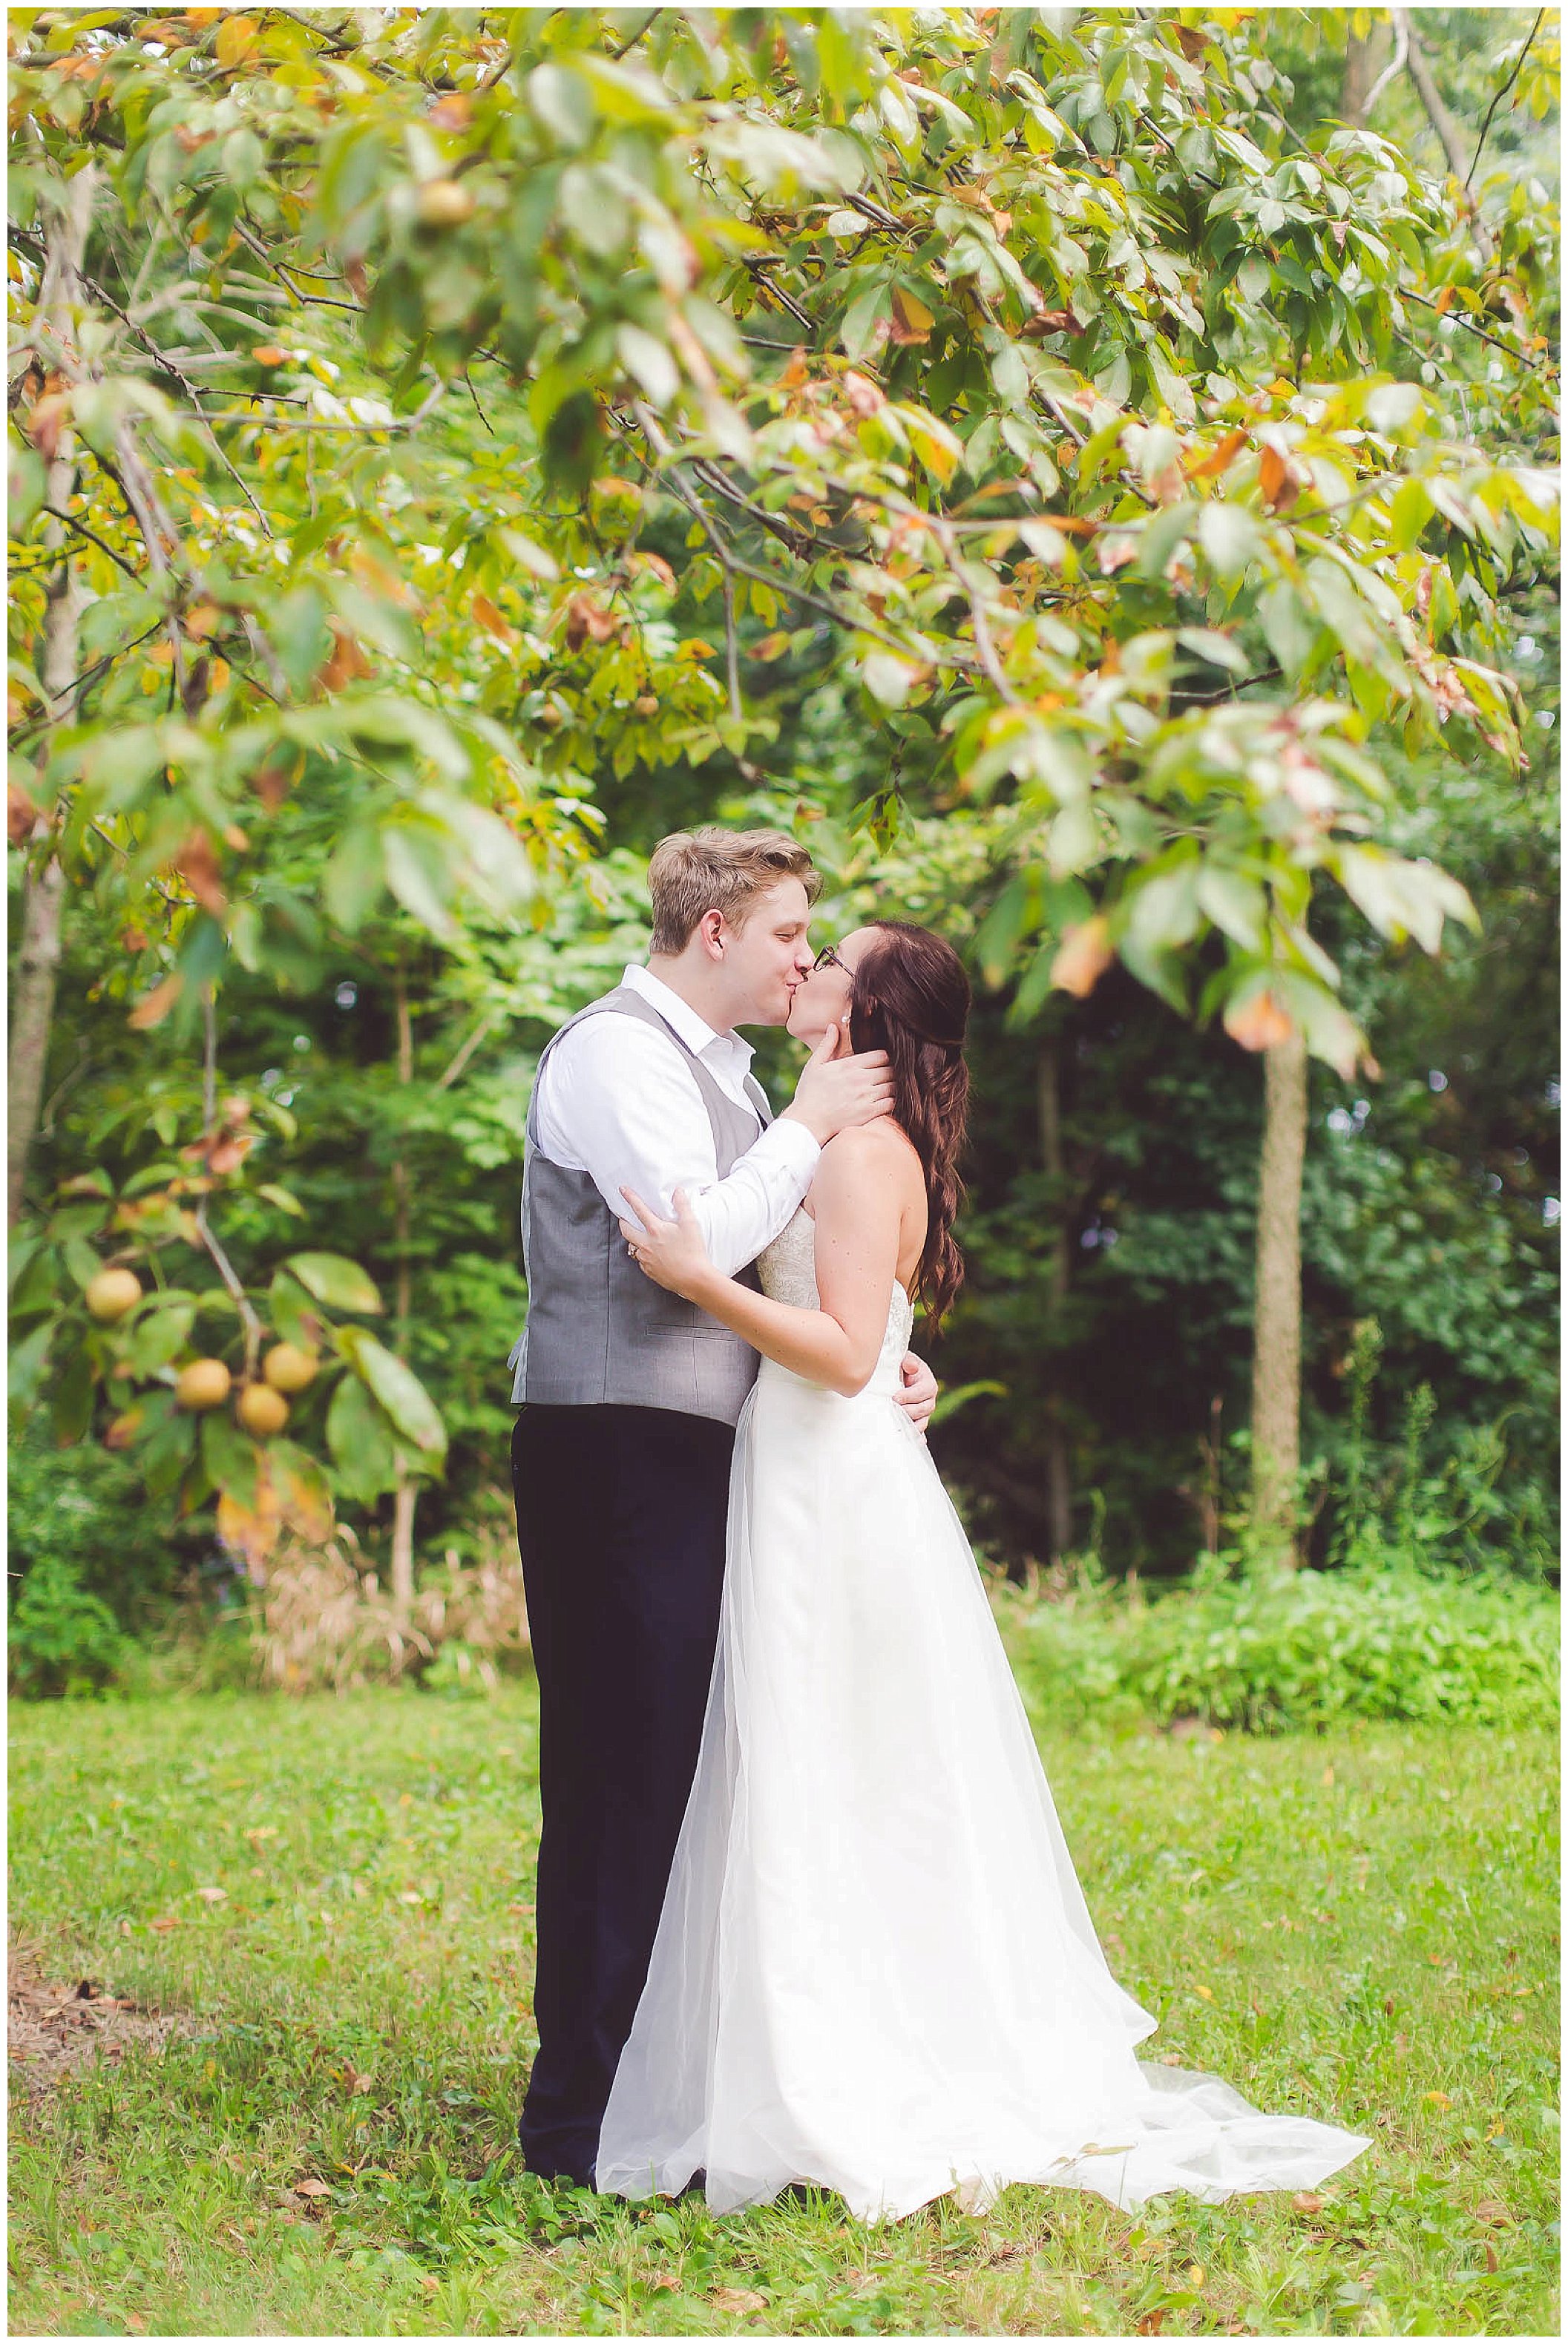 Stunning backyard wedding with twinkly lights, Fort Wayne Indiana Wedding Photographer_0036.jpg